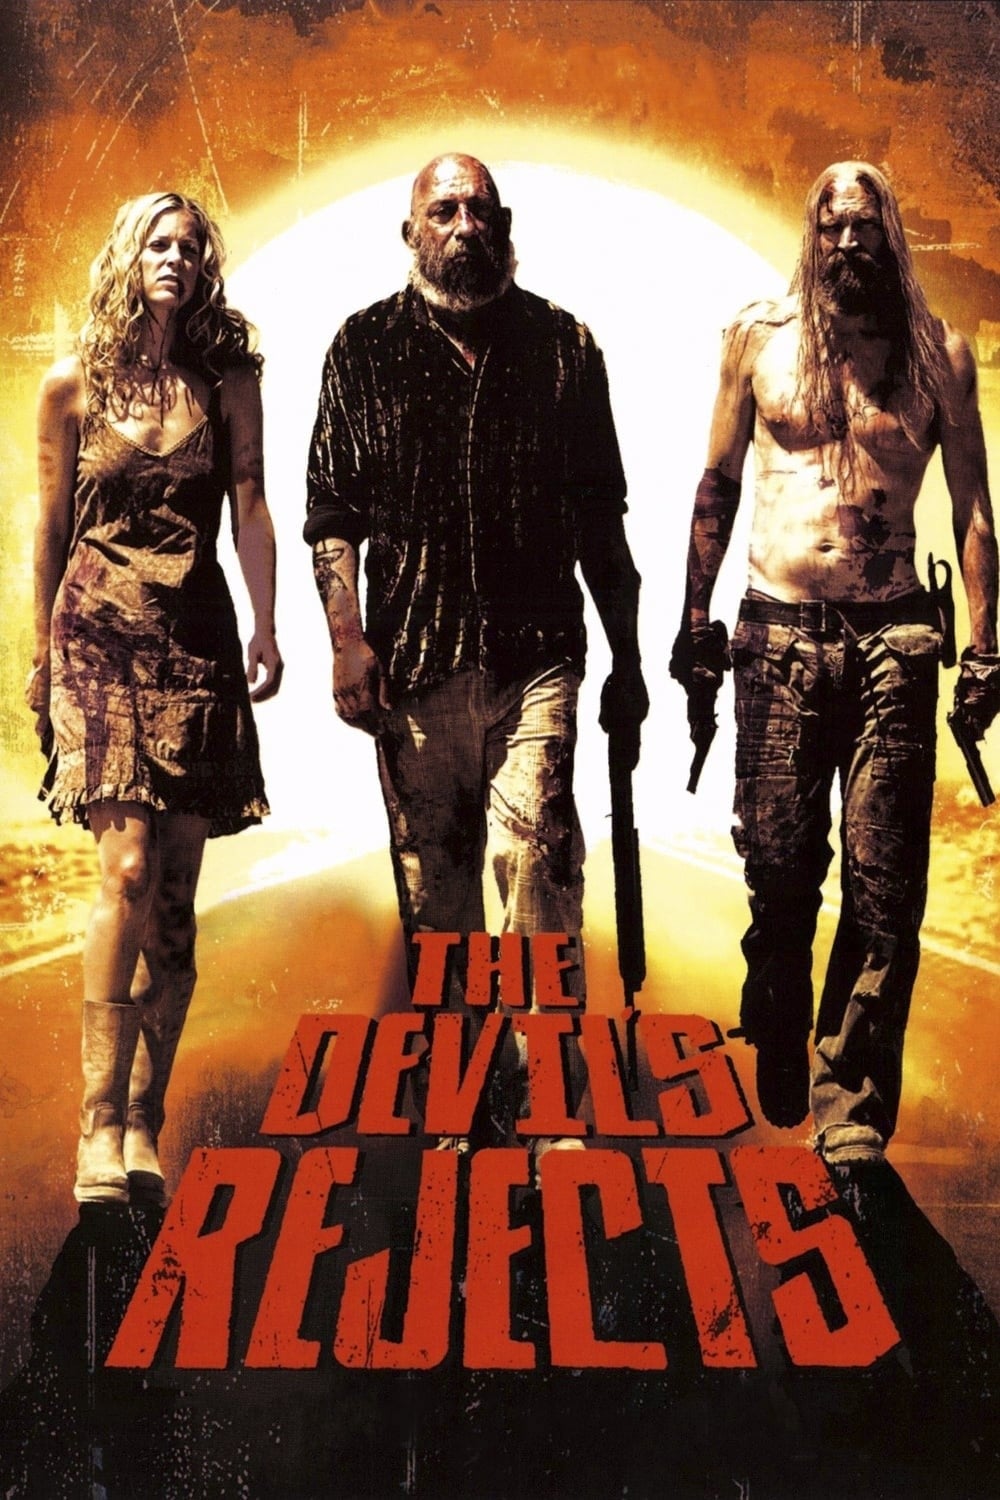 Los renegados del diablo (2005)